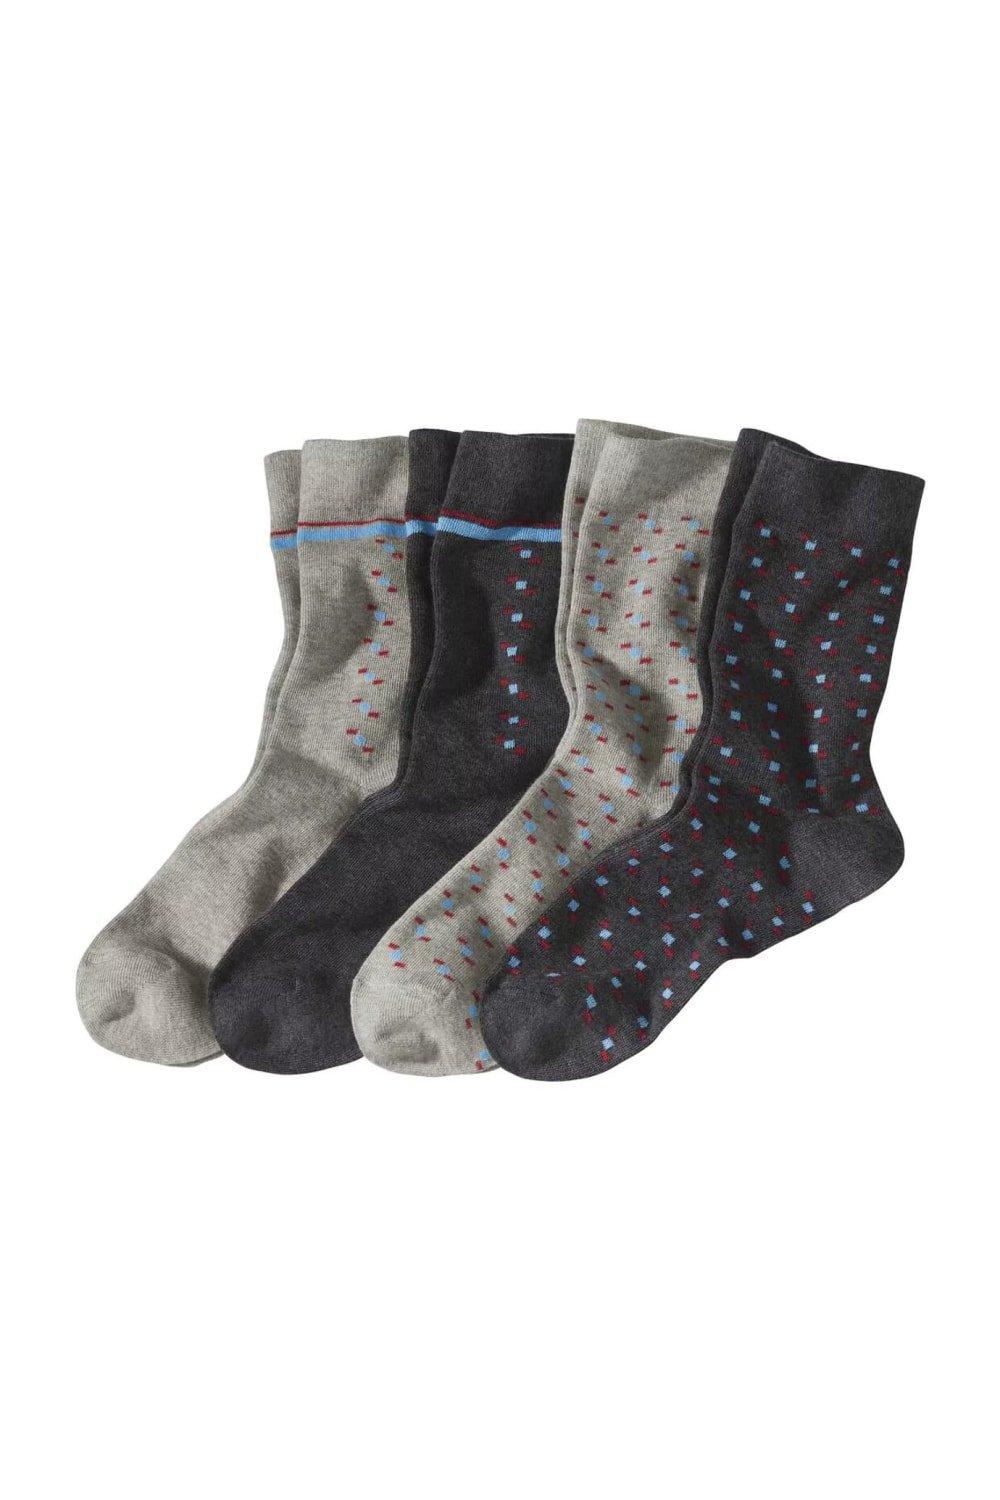 Patterned Socks (Pack of 4)